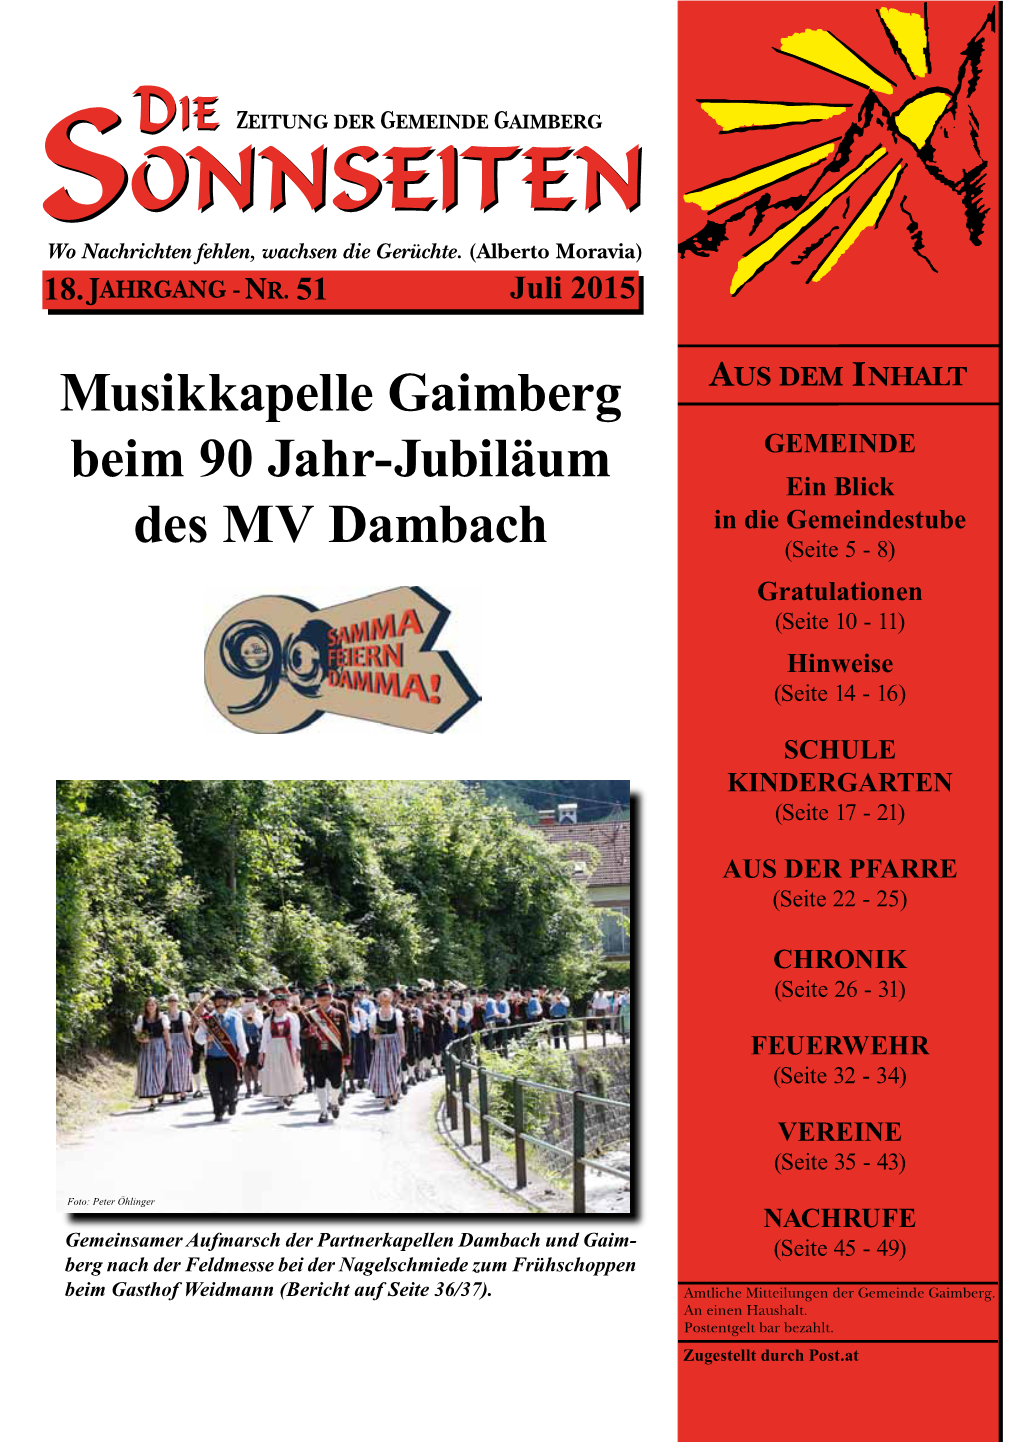 Musikkapelle Gaimberg Beim 90 Jahr-Jubiläum Des MV Dambach